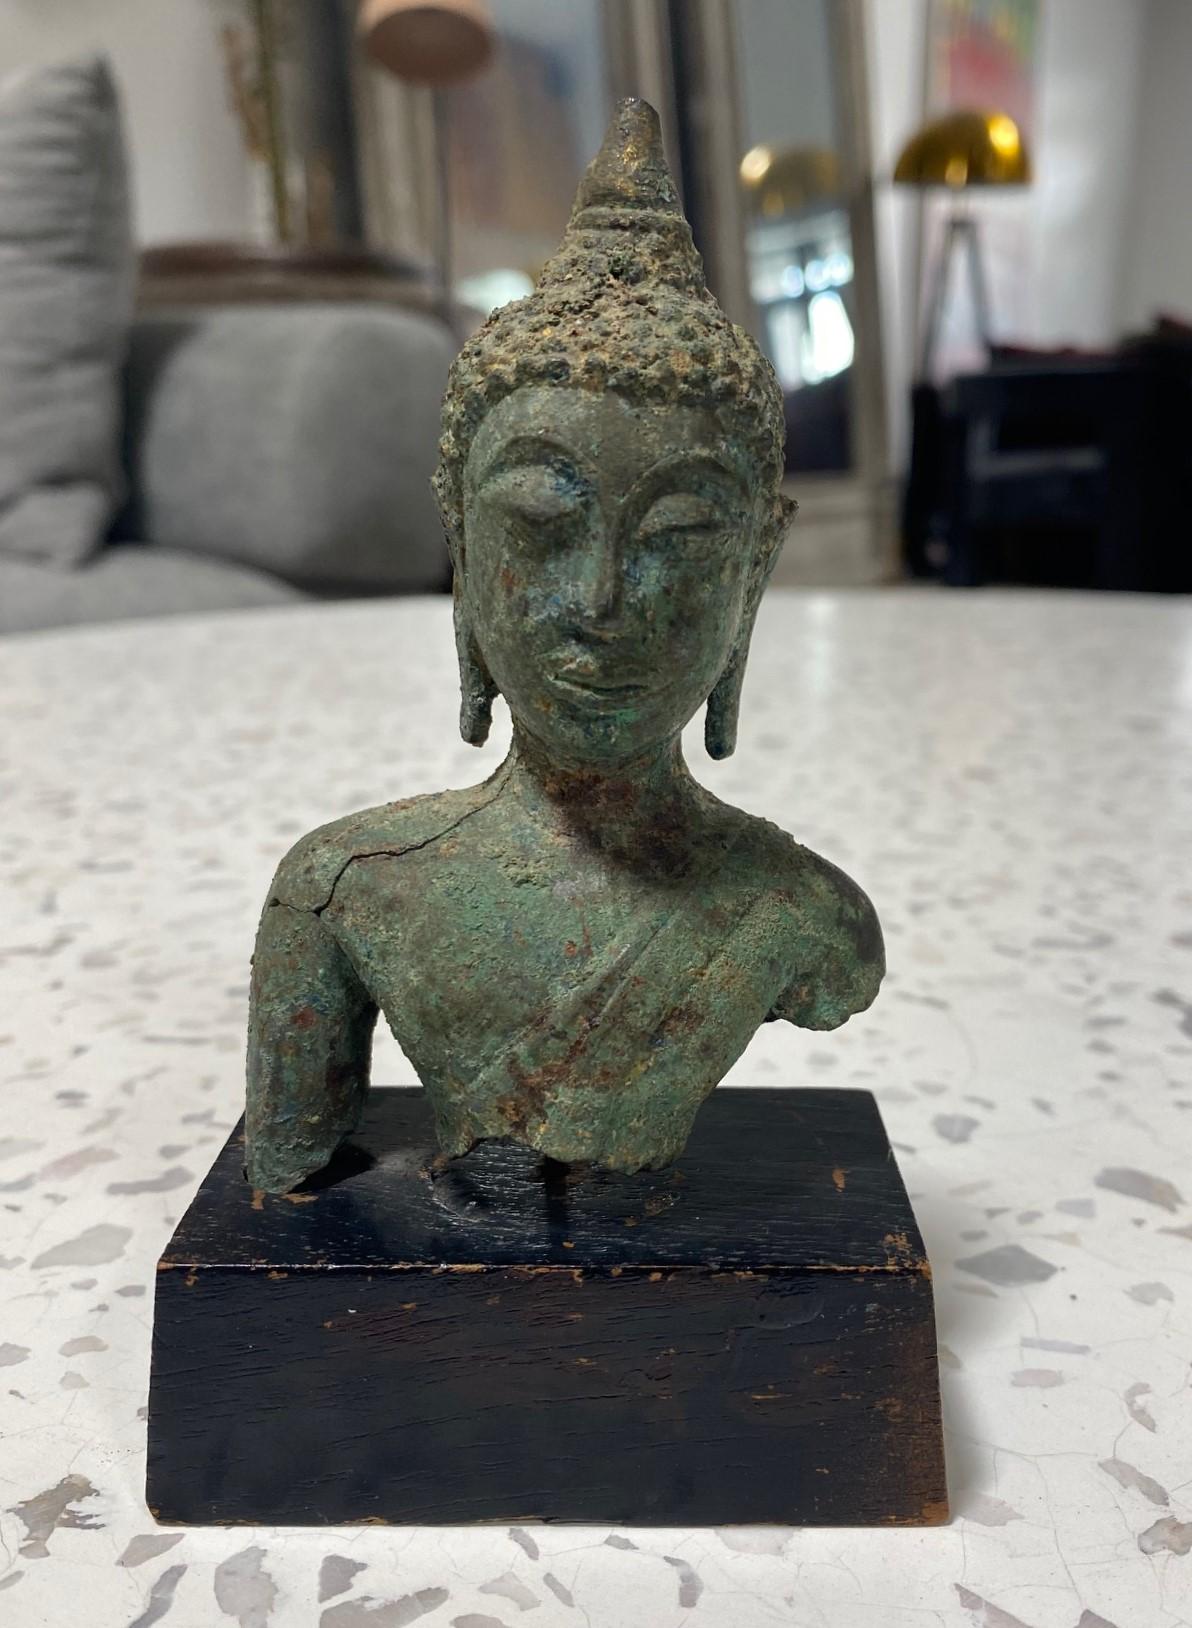 Ein wunderschön geschnitzter thailändischer/ Siam südostasiatischer Bronze-Buddha-Kopf auf einem speziell angefertigten Holzständer. Die Augen des Buddha sind in ruhiger Meditation geschlossen. Dieses wunderschöne Schmuckstück fühlt sich wunderbar